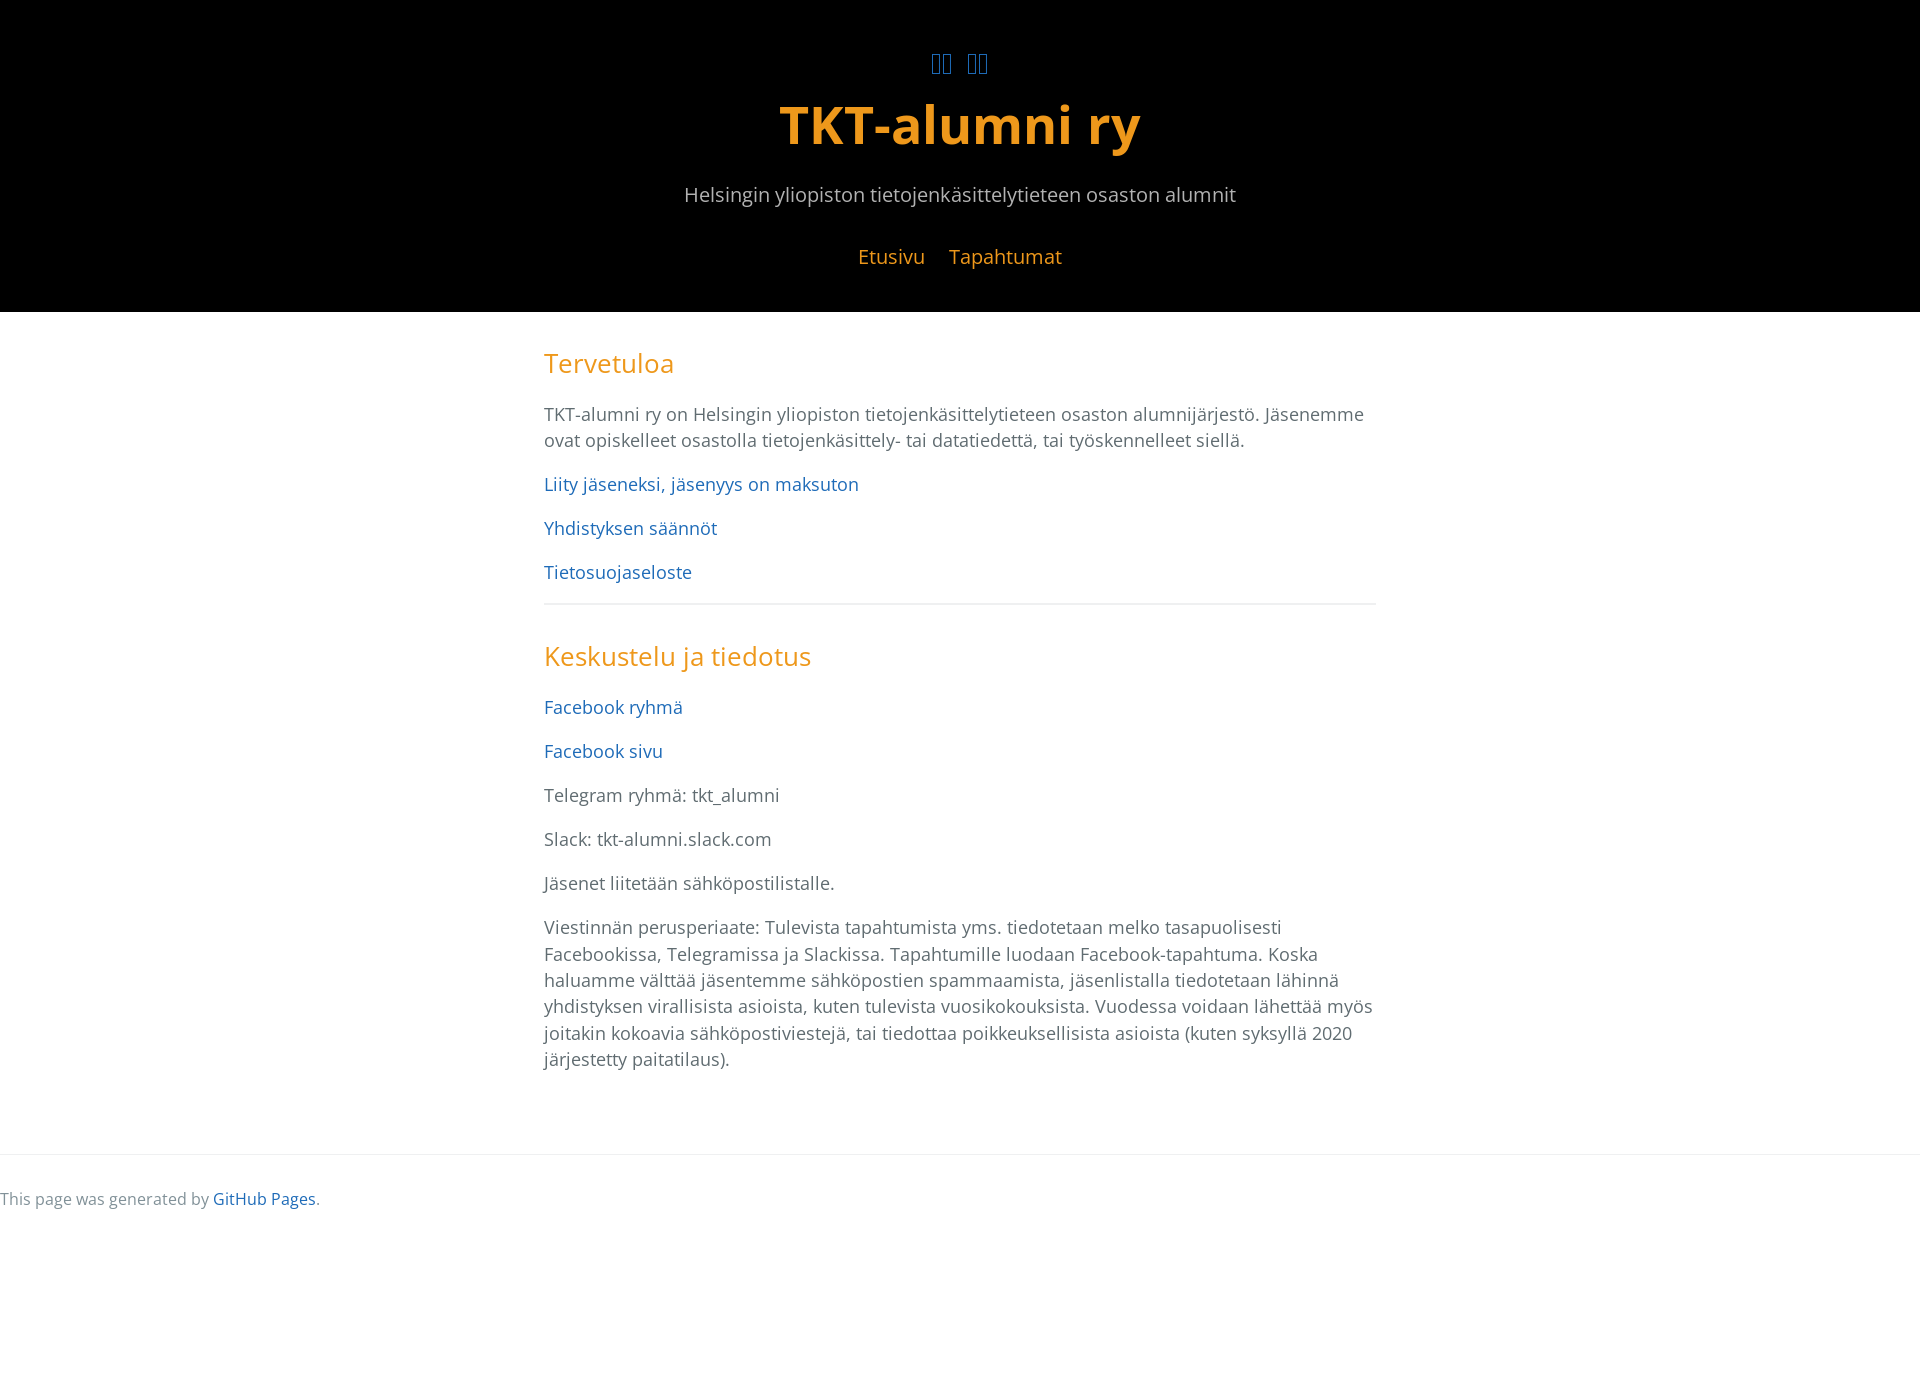 Näyttökuva tkt-alumni.fi